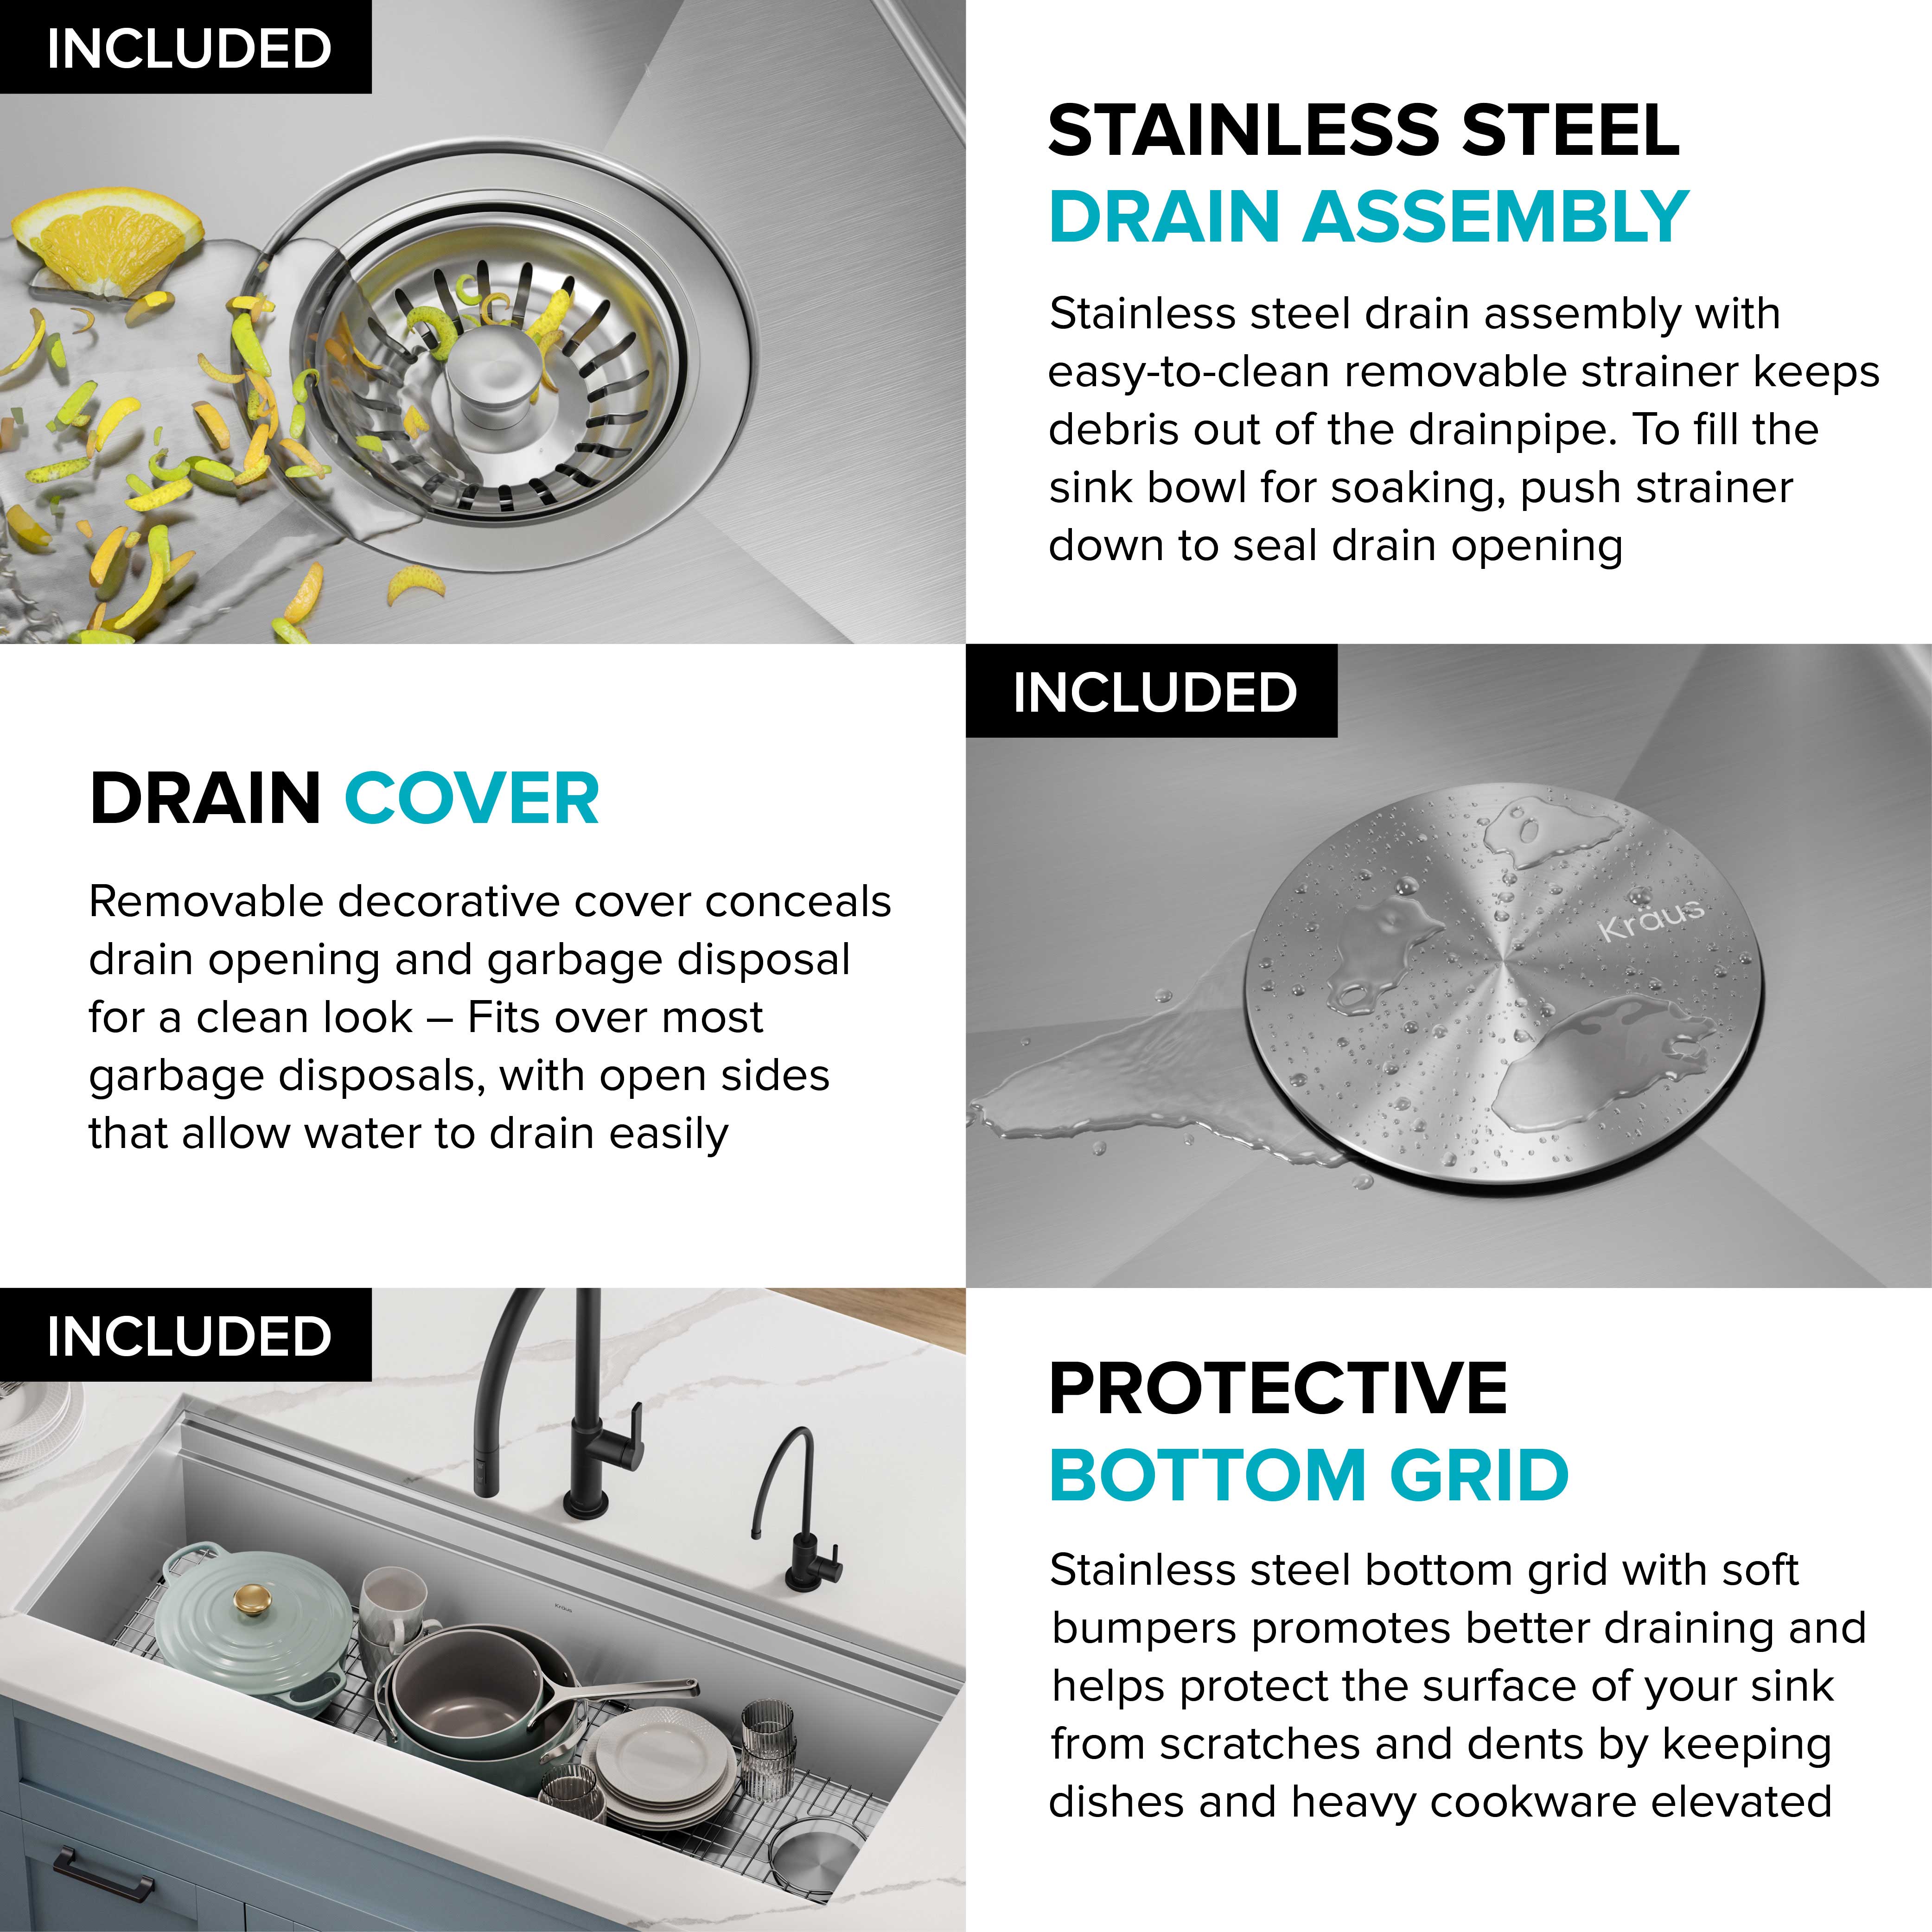 KRAUS Kore 2-Tier Workstation 45" Undermount 16 Gauge Single Bowl Stainless Steel Kitchen Sink with Accessories